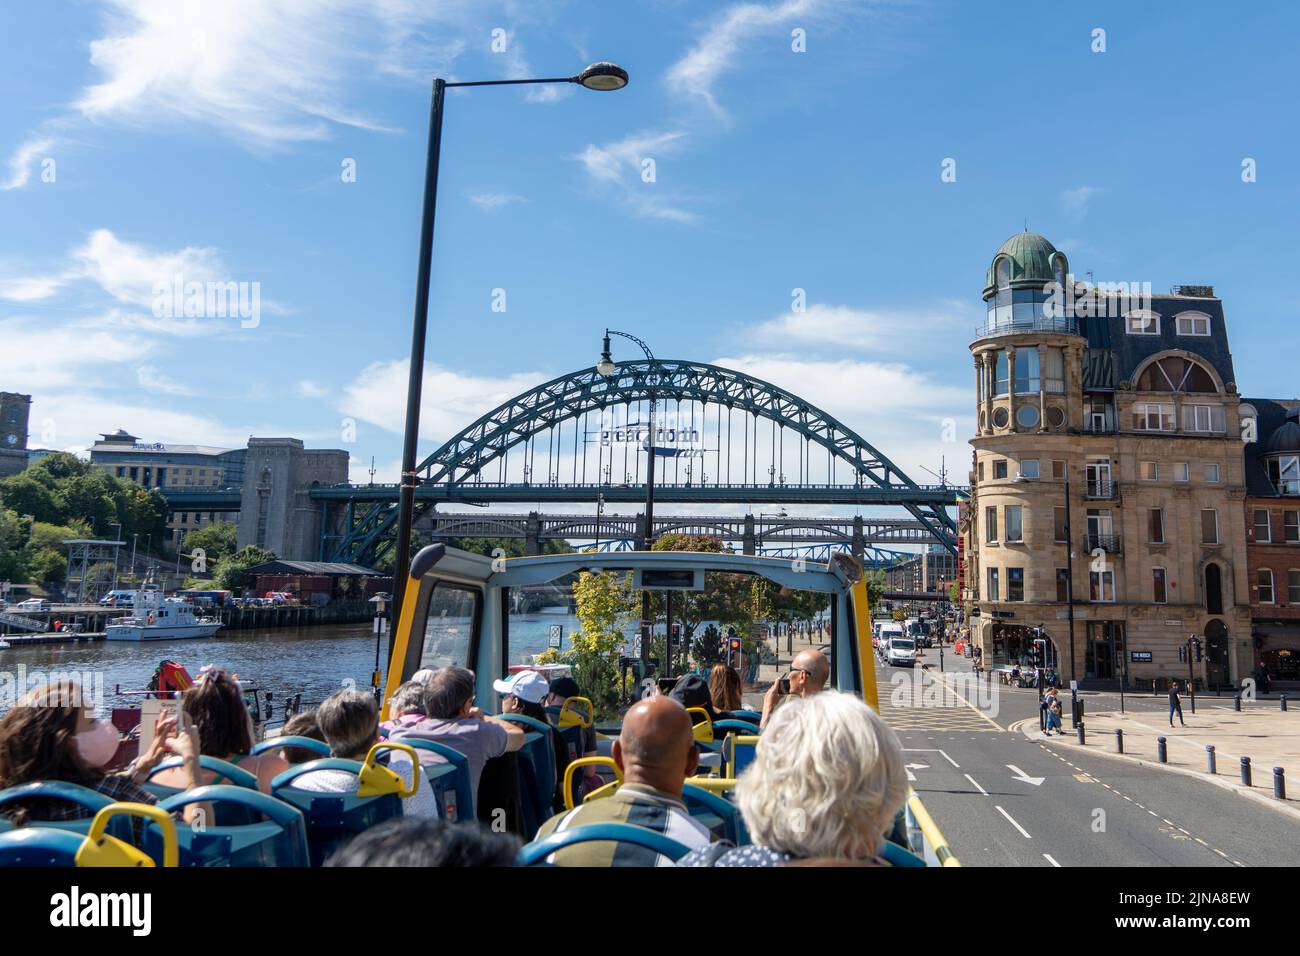 Reisen Sie durch die Stadt Newcastle Upon Tyne, Großbritannien, mit dem offenen Toon Tour Sightseeing Bus, an einem sonnigen Tag. Blick auf den Tyne Bridge Quayside. Stockfoto